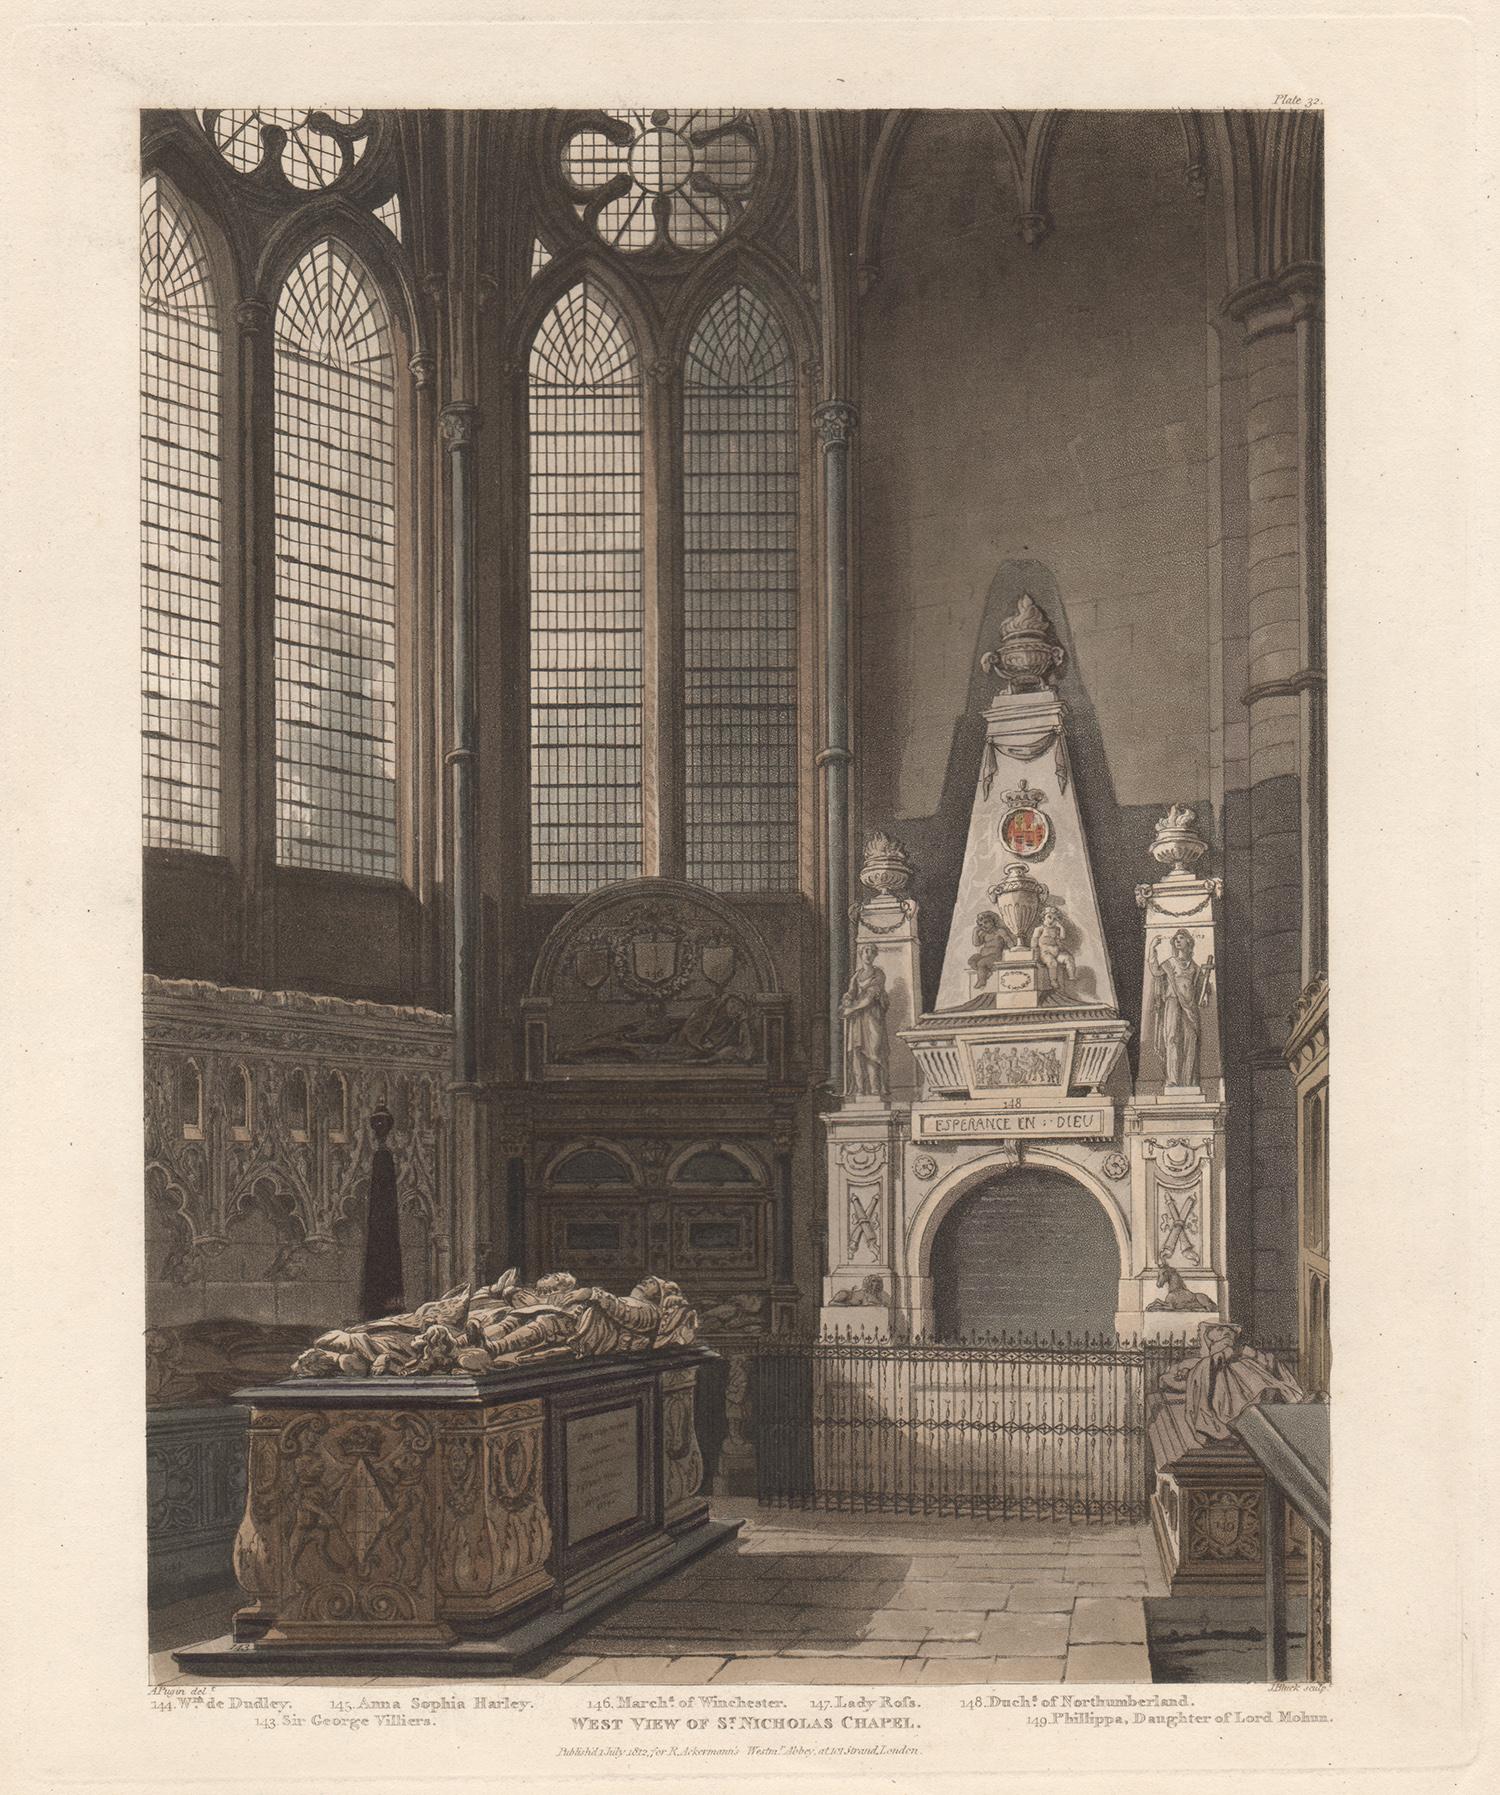 Vue Ouest de la chapelle St Nicholas,abbaye de Westminster, aquatinte d'architecture